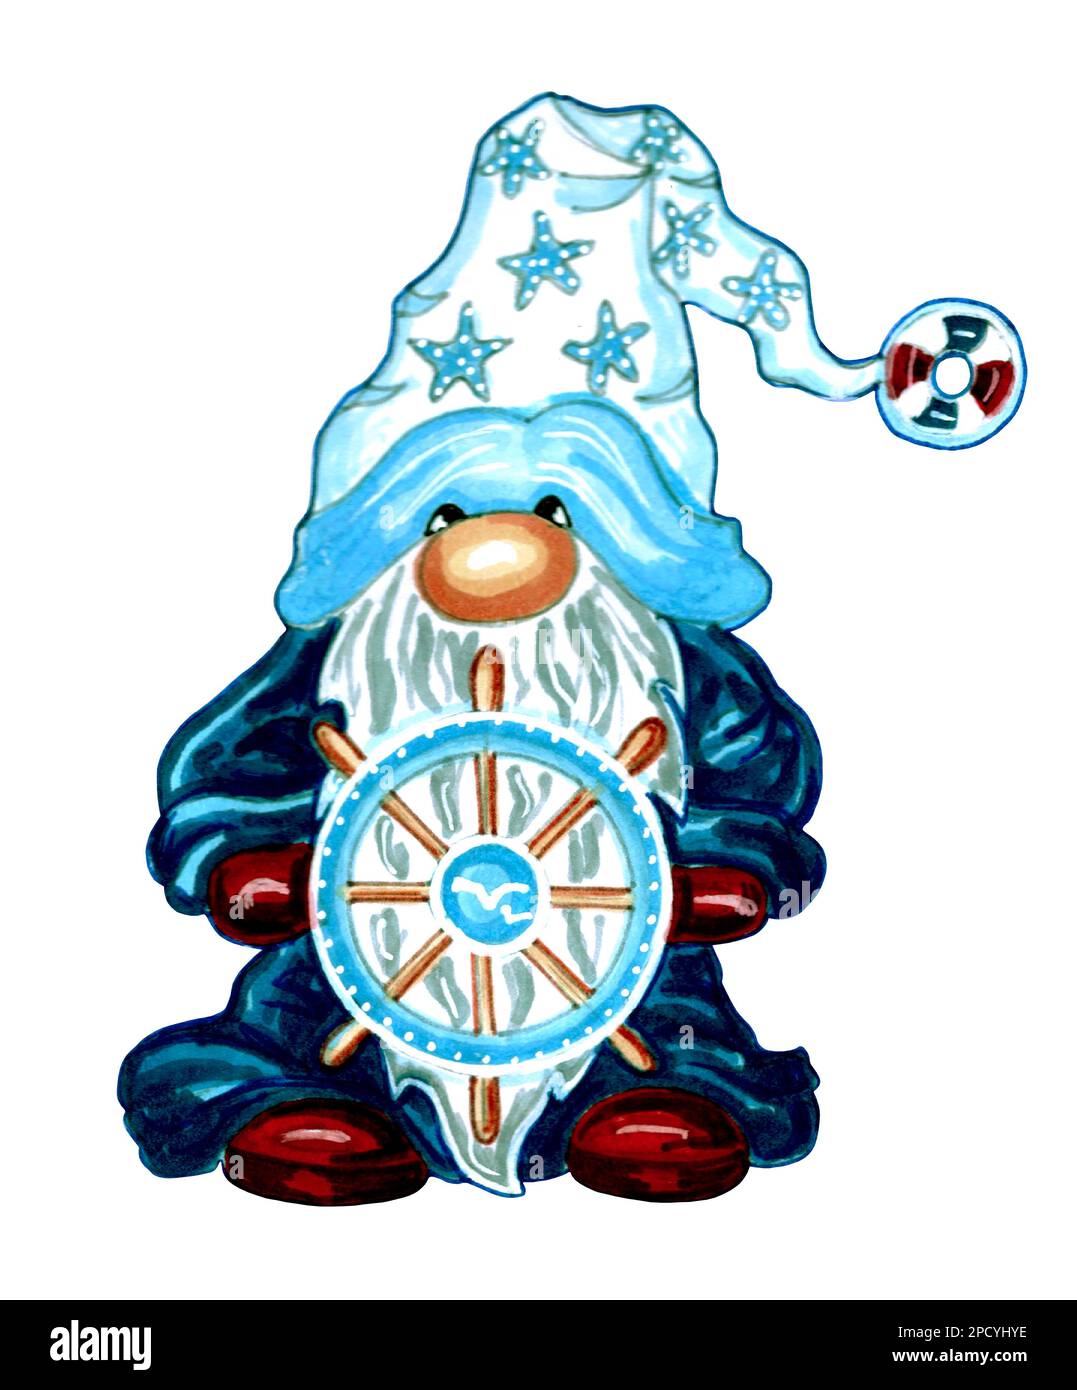 GNOME avec un volant dans ses mains dans un imperméable bleu foncé et un chapeau avec des étoiles de mer. Illustration JPEG. Banque D'Images